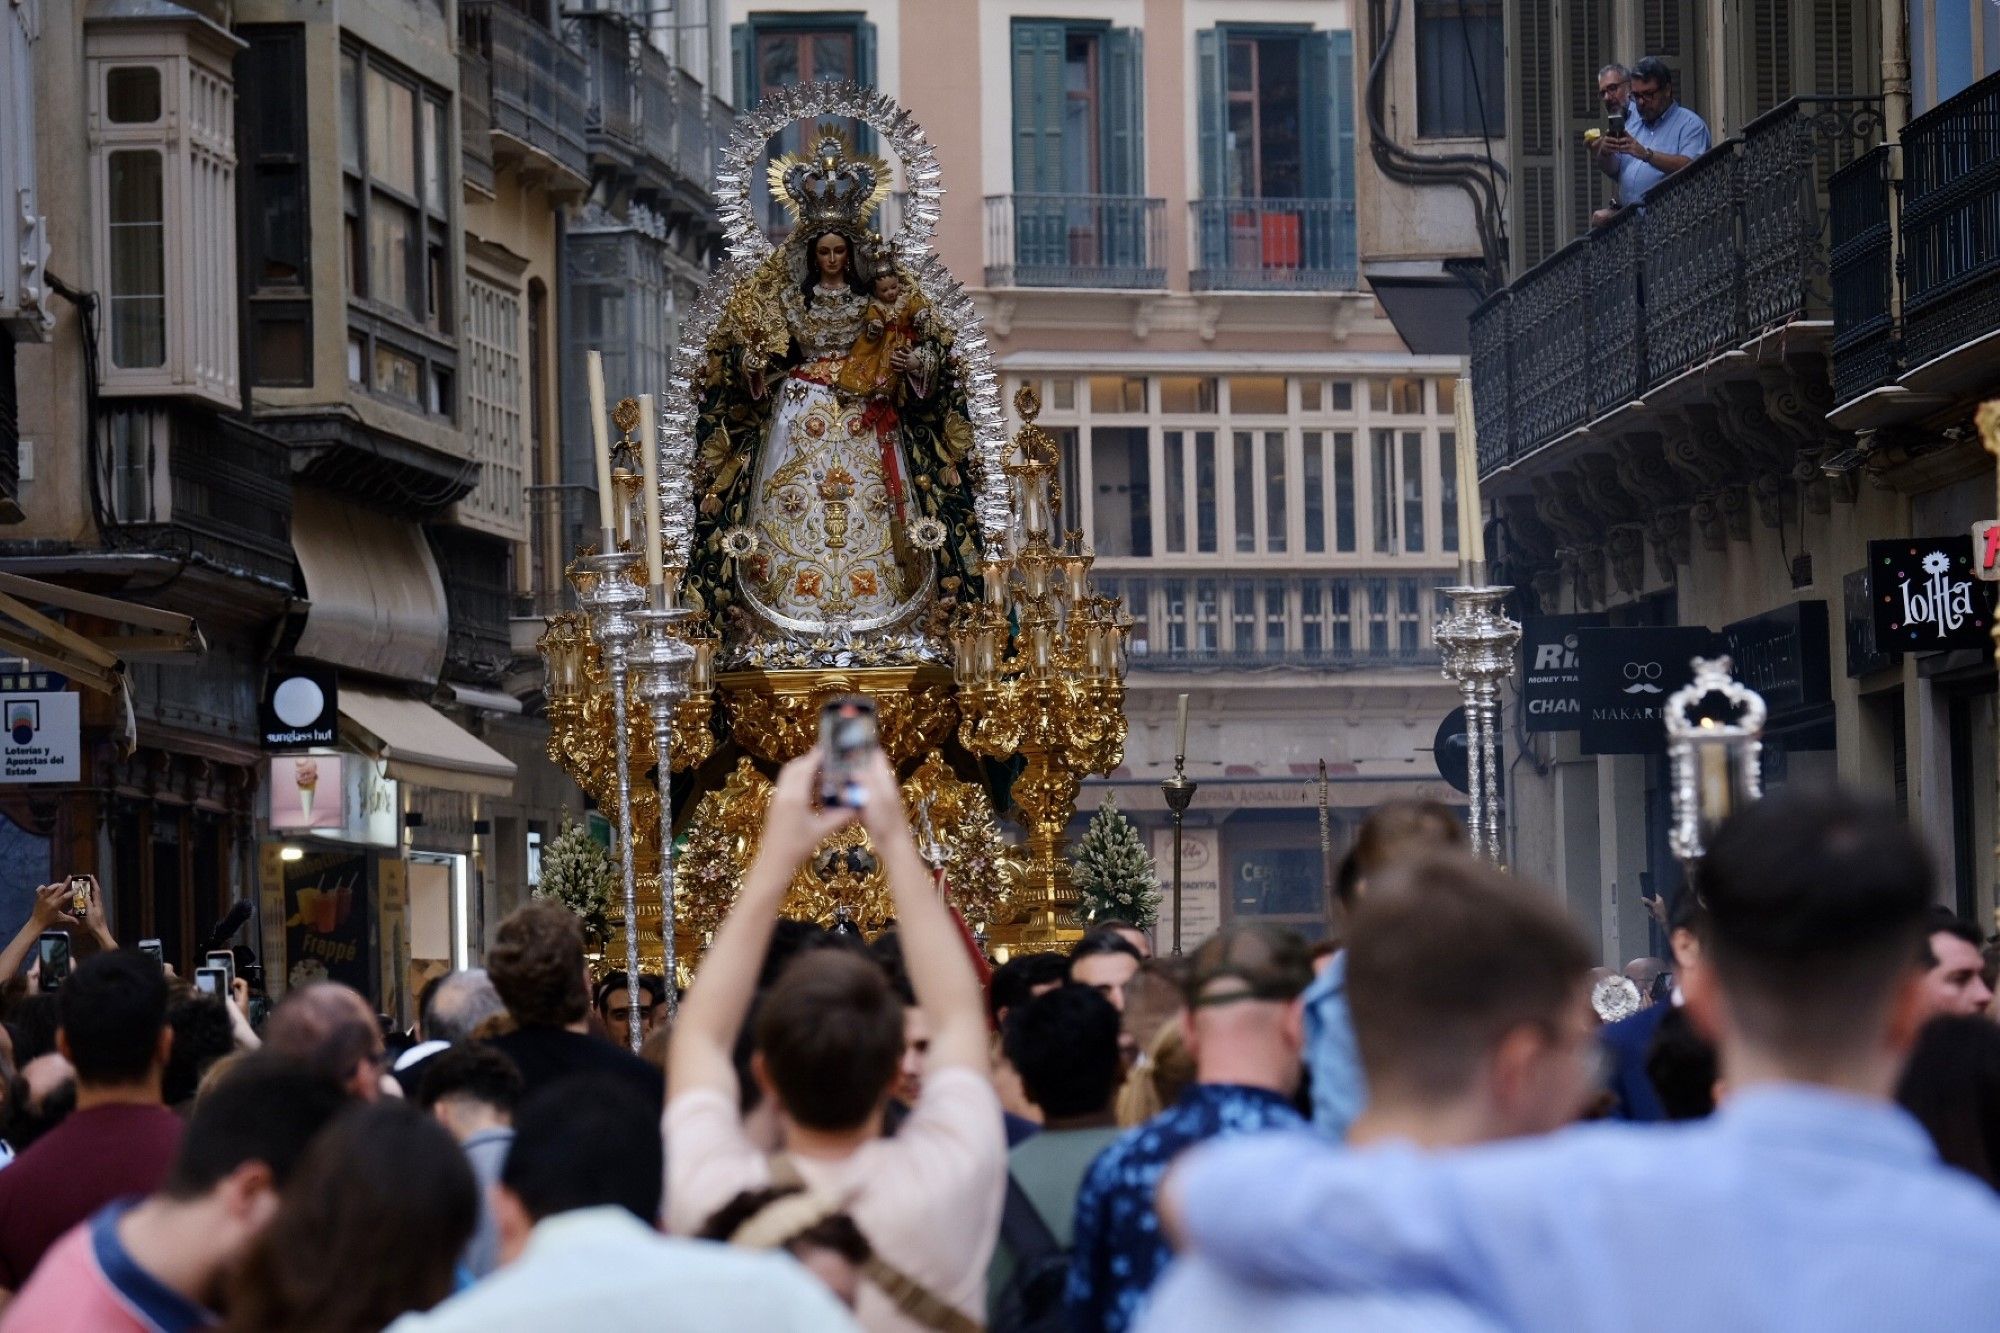 La procesión de la Virgen de los Remedios, en imágenes